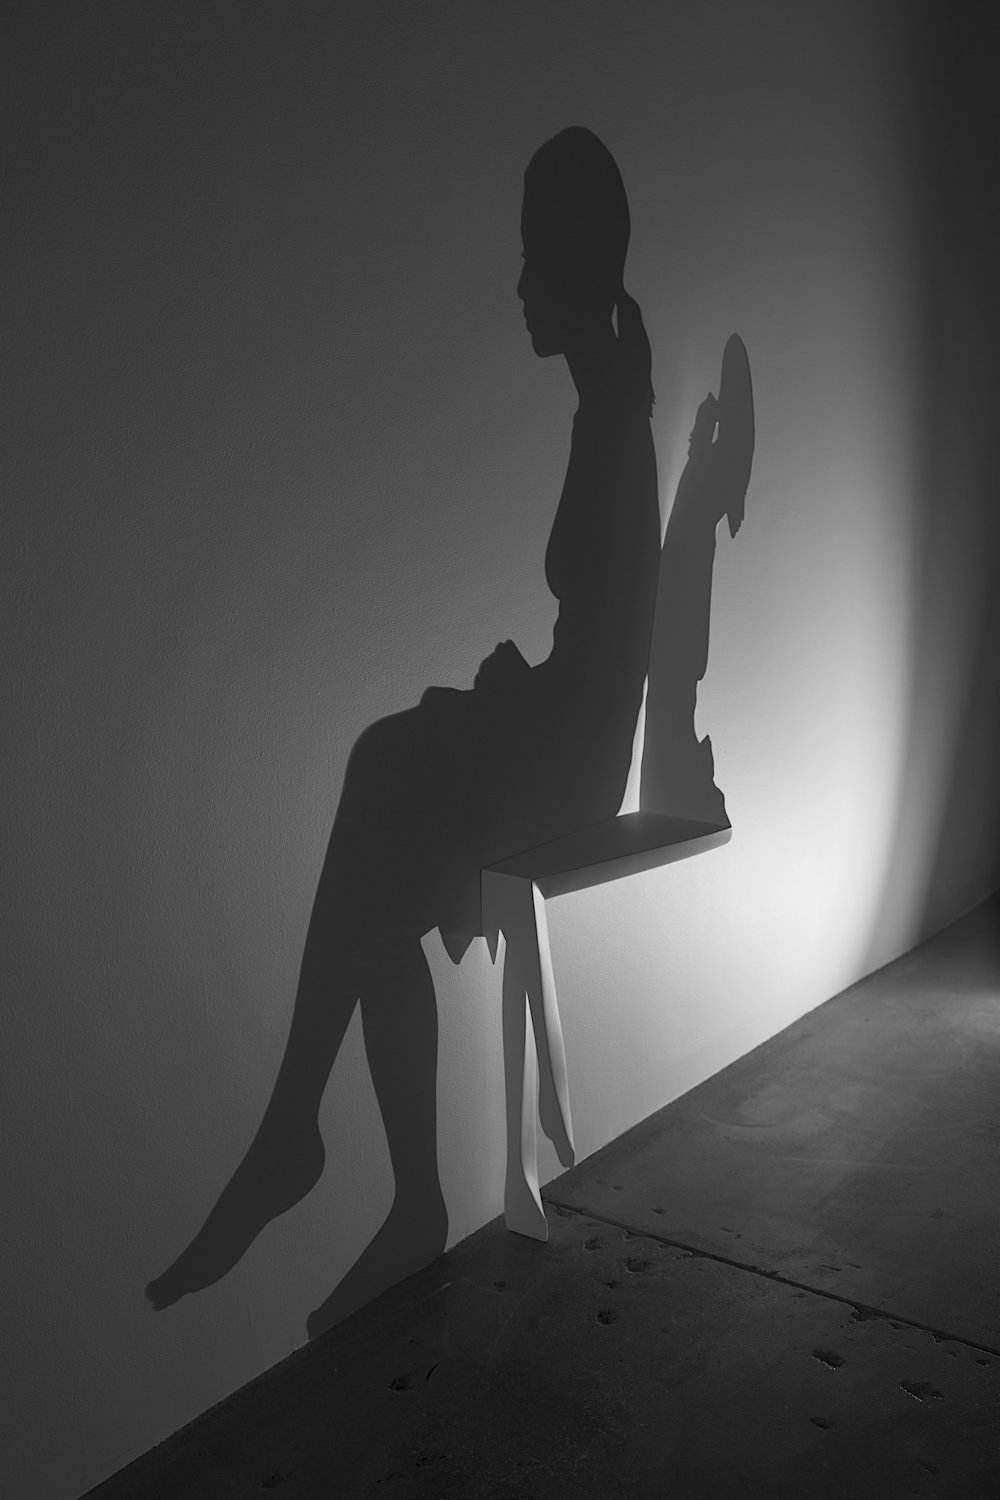 Kumi Yamashita shadow art, a woman sitting